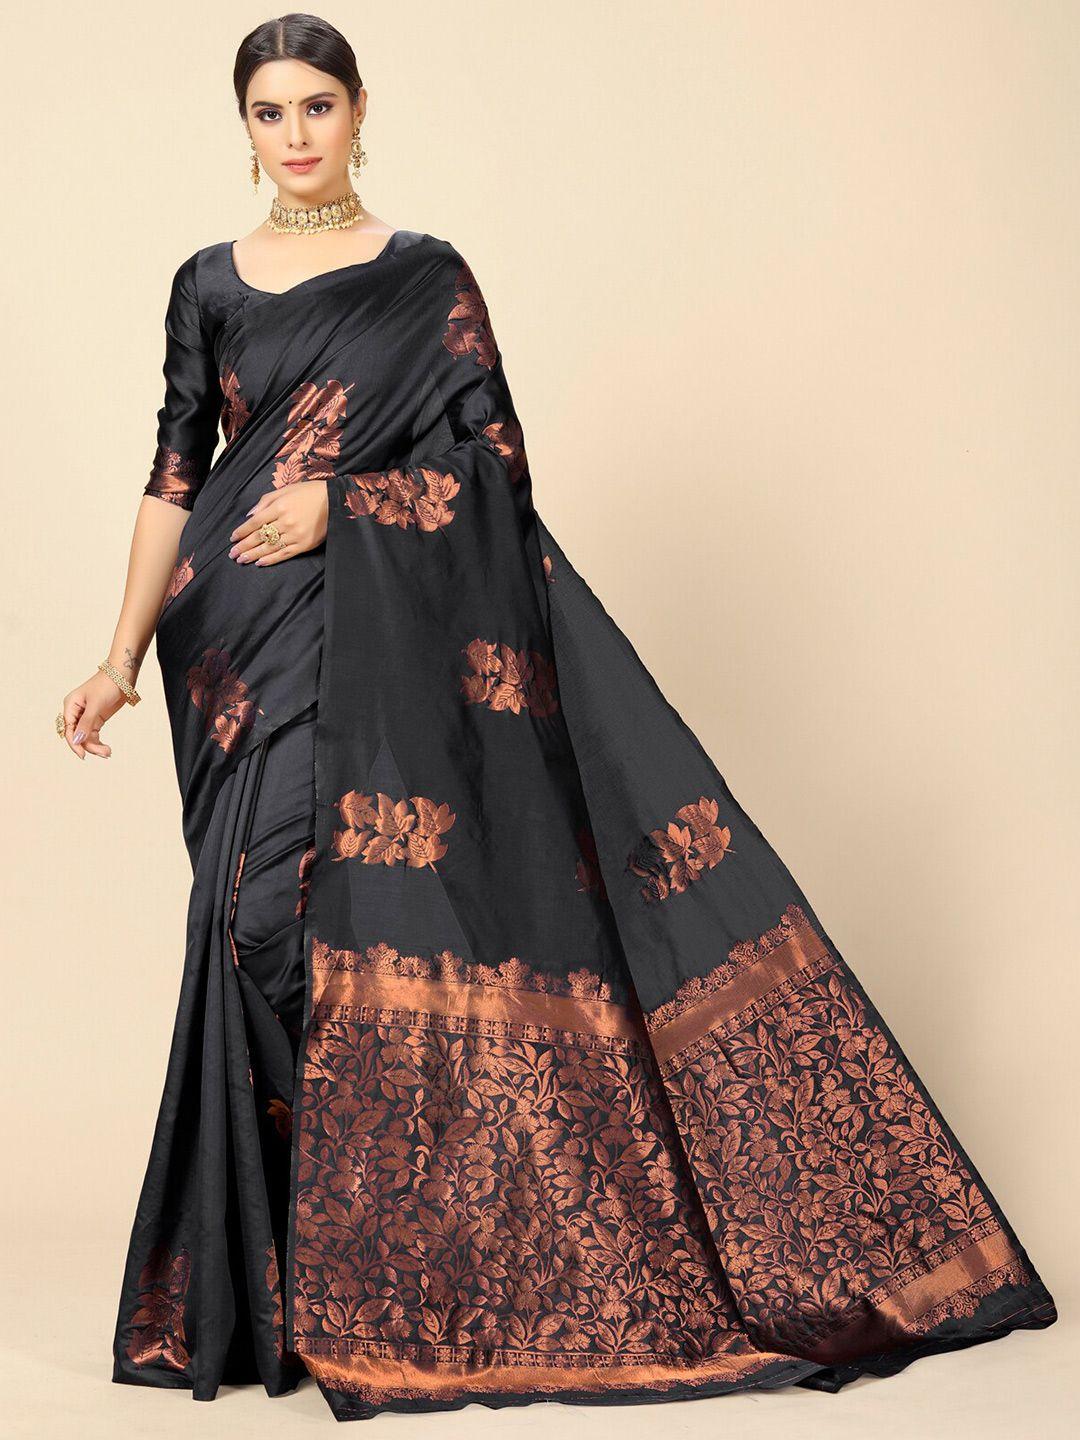 rangita floral woven design zari banarasi saree